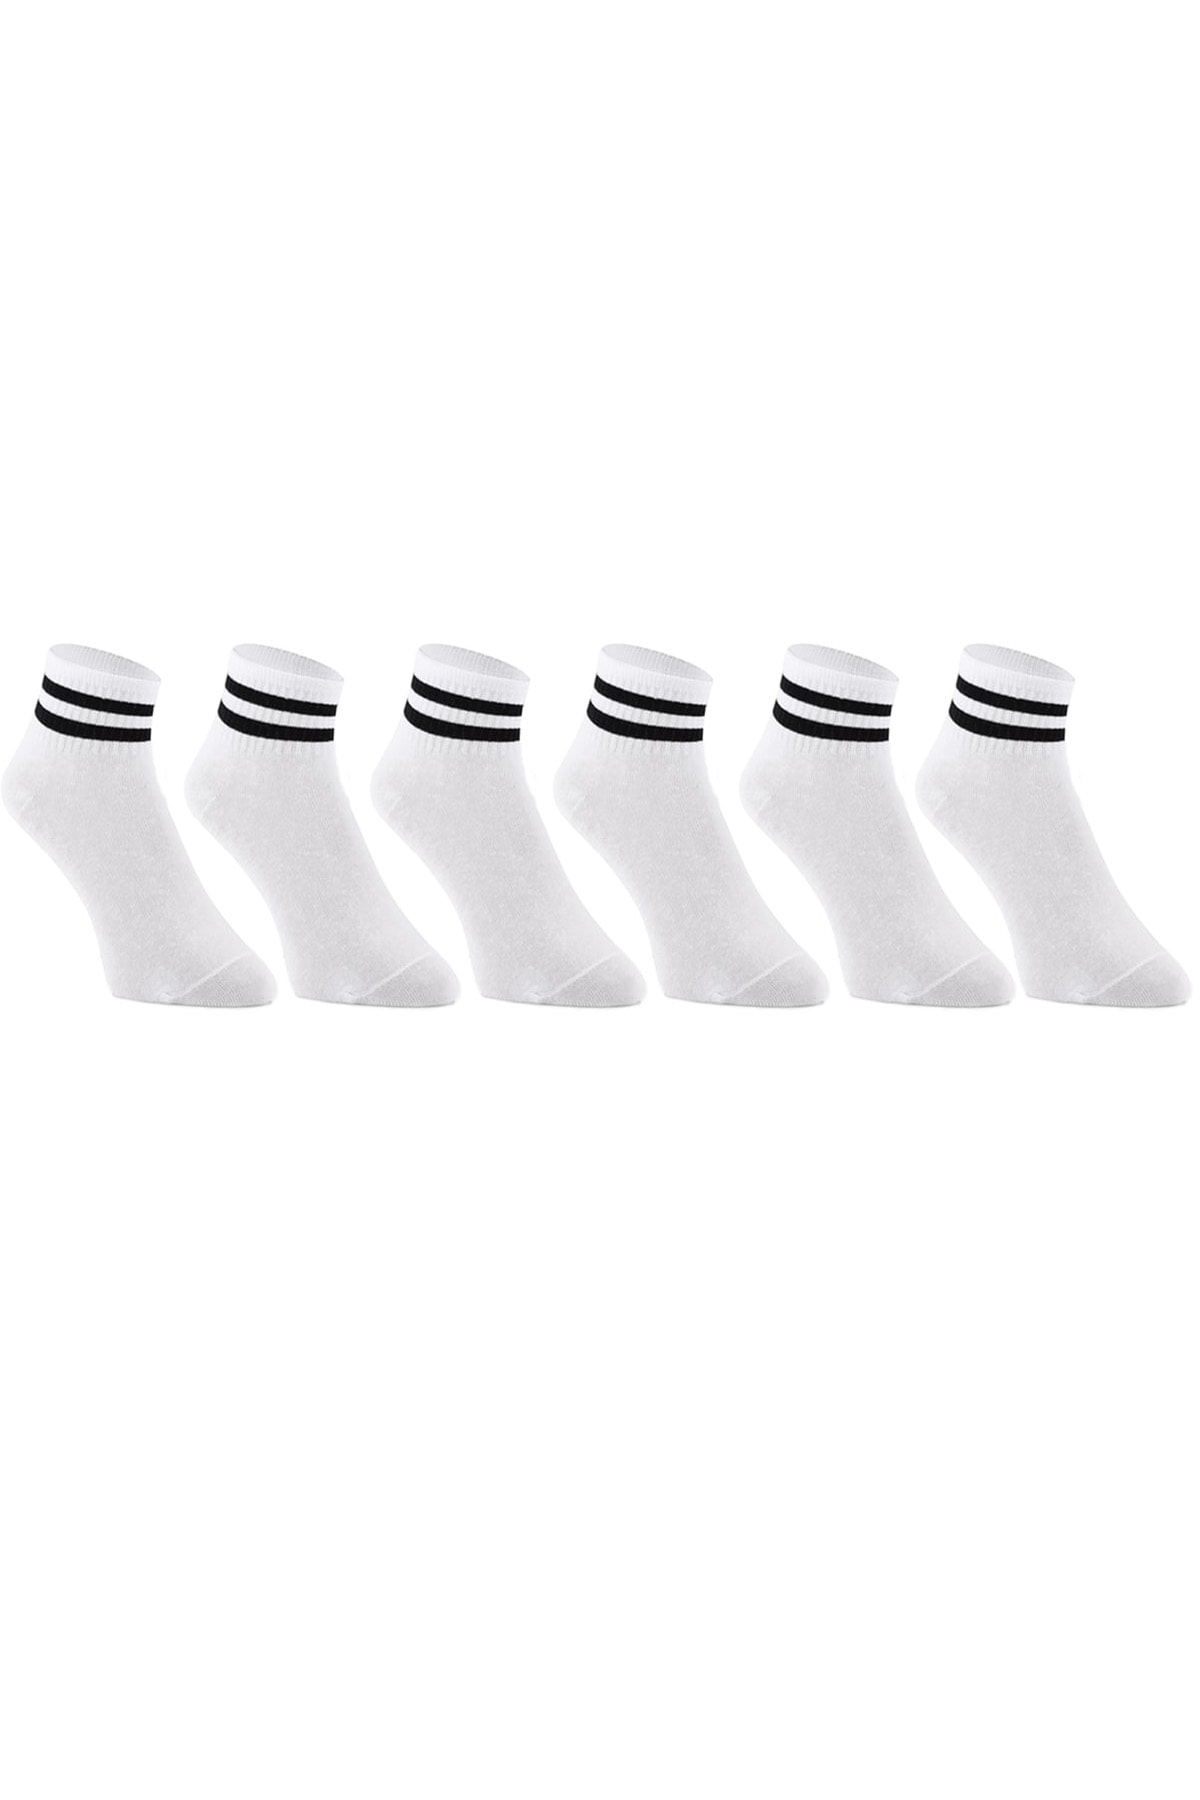 nettofit 6'lı Karışık Renk Erkek Kolej Tenis Çorabı Yarım Konç Patik